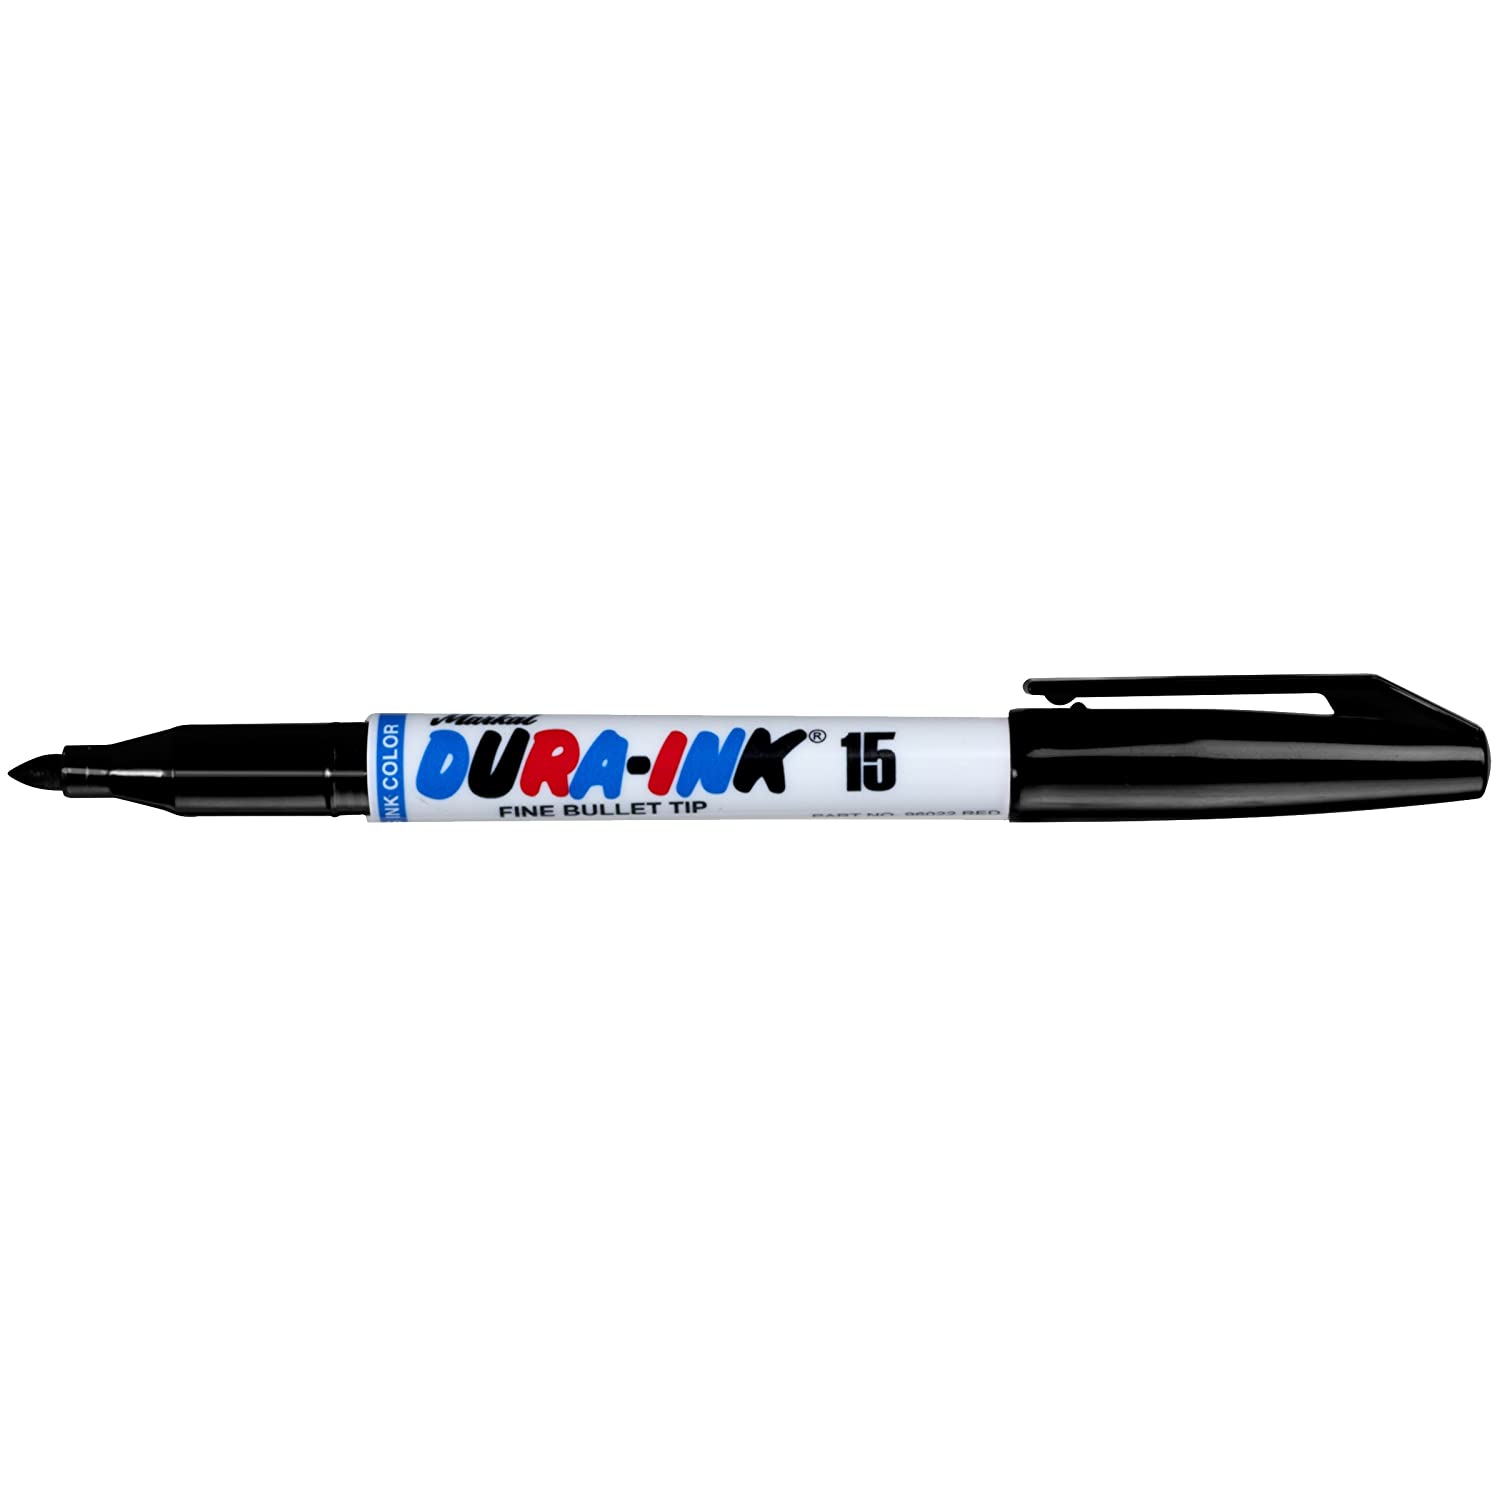 Markal 96023 Dura-Ink 15 Permanent Ink Marker with Fine Bullet Tip, Black